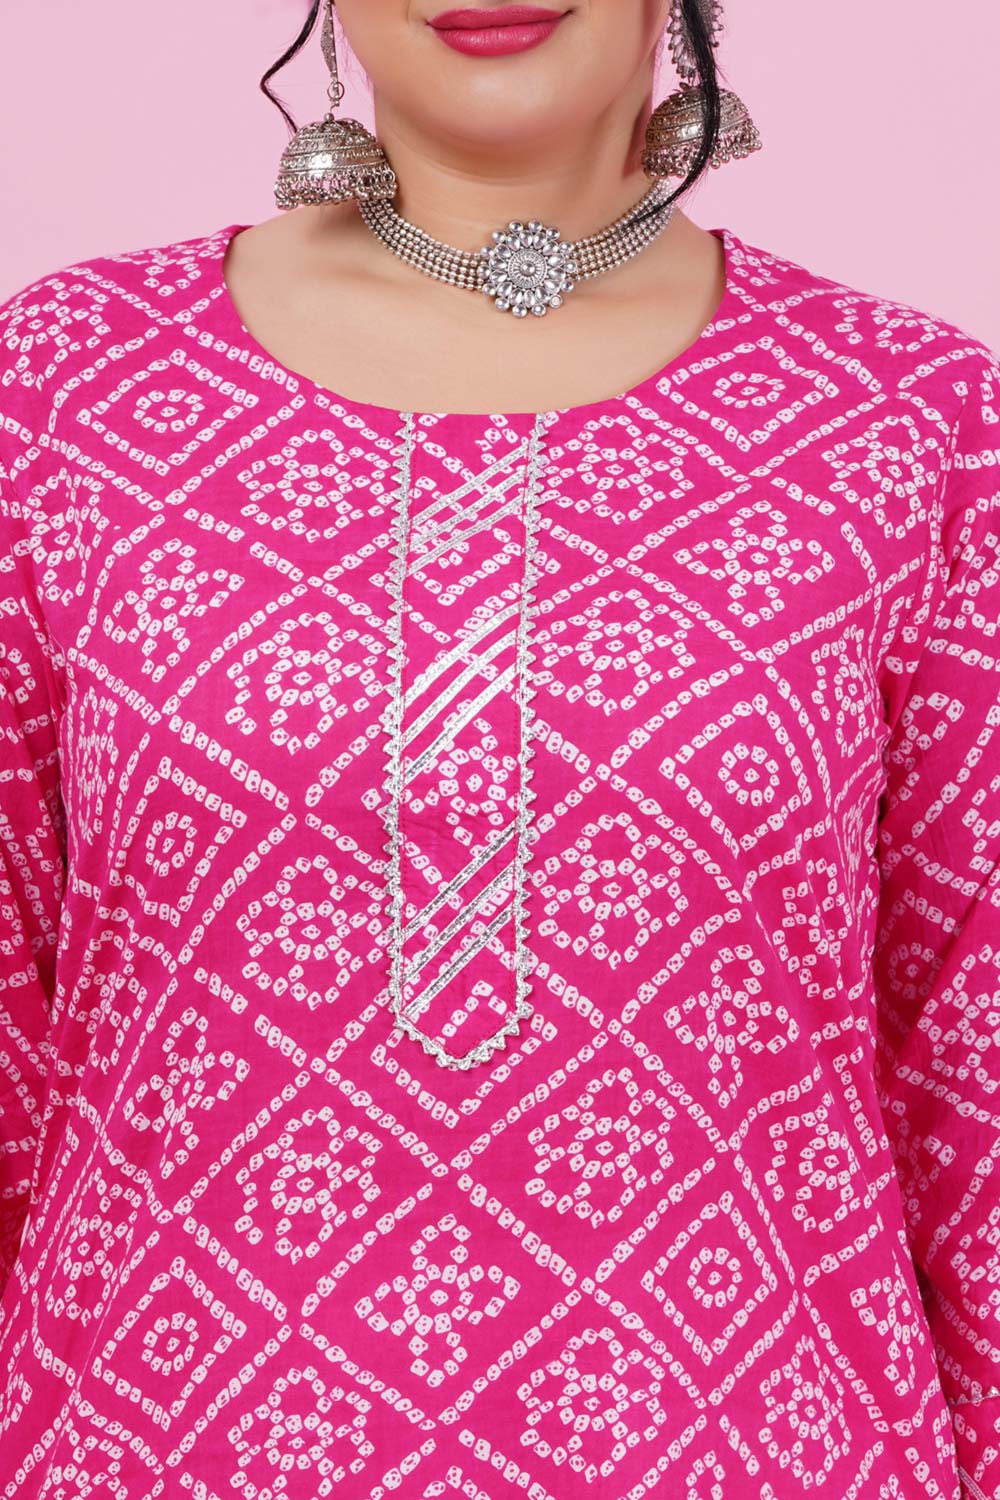 LastInch Sparkle Pink Bandhani Cotton Kurta | Sizes XXS to 8XL